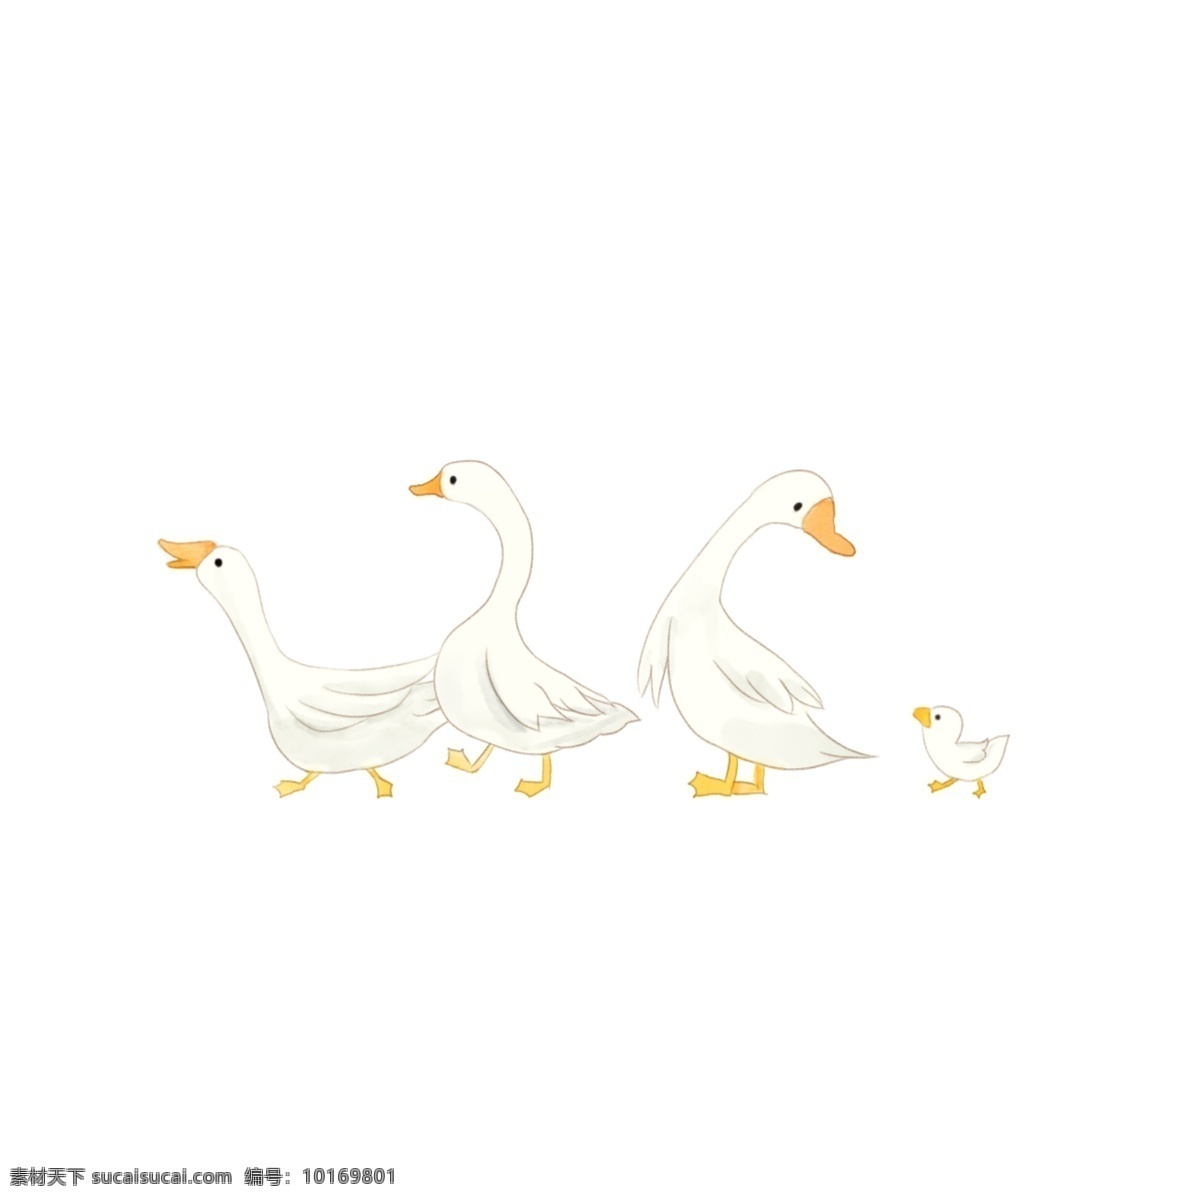 春季 卡通 手绘 小 鸭子 卡通鸭子 手绘小鸭子 手绘鸭子 白色鸭子 手绘小动物 免抠小鸭子 可爱的鸭子 鸭群